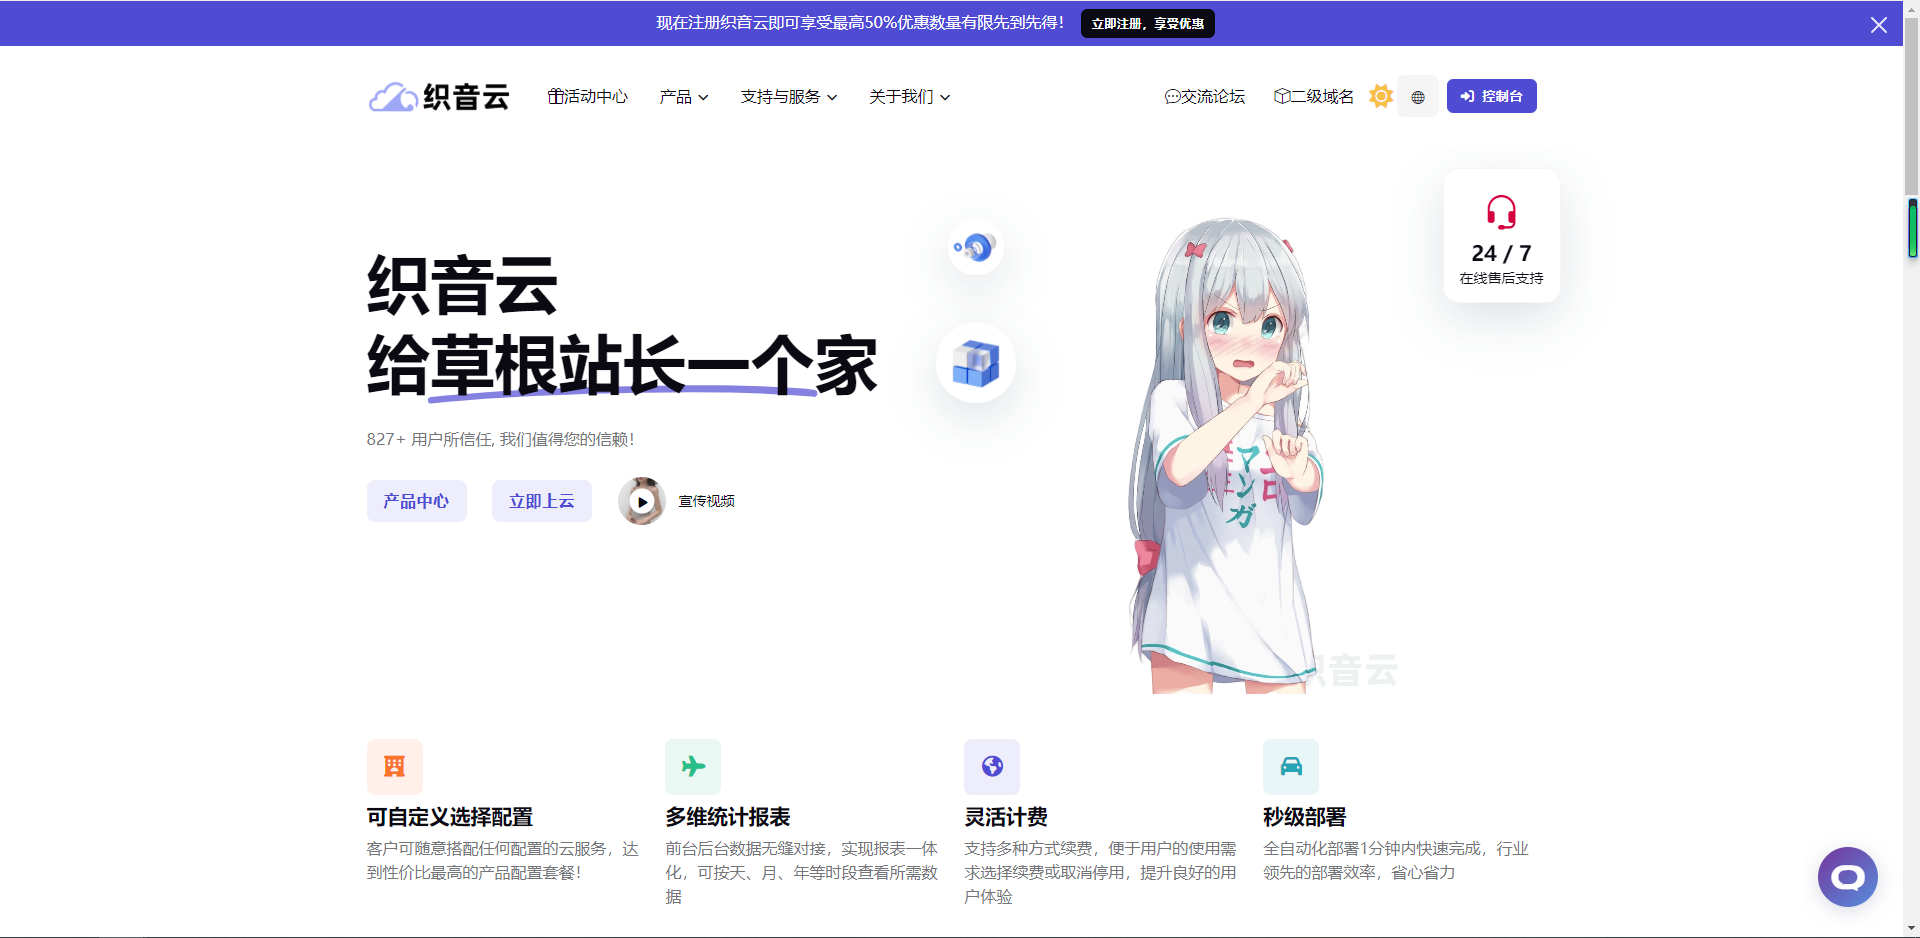 织音云:新春回馈优惠,云服务器7折订购续费起,虚拟主机CDN5折！